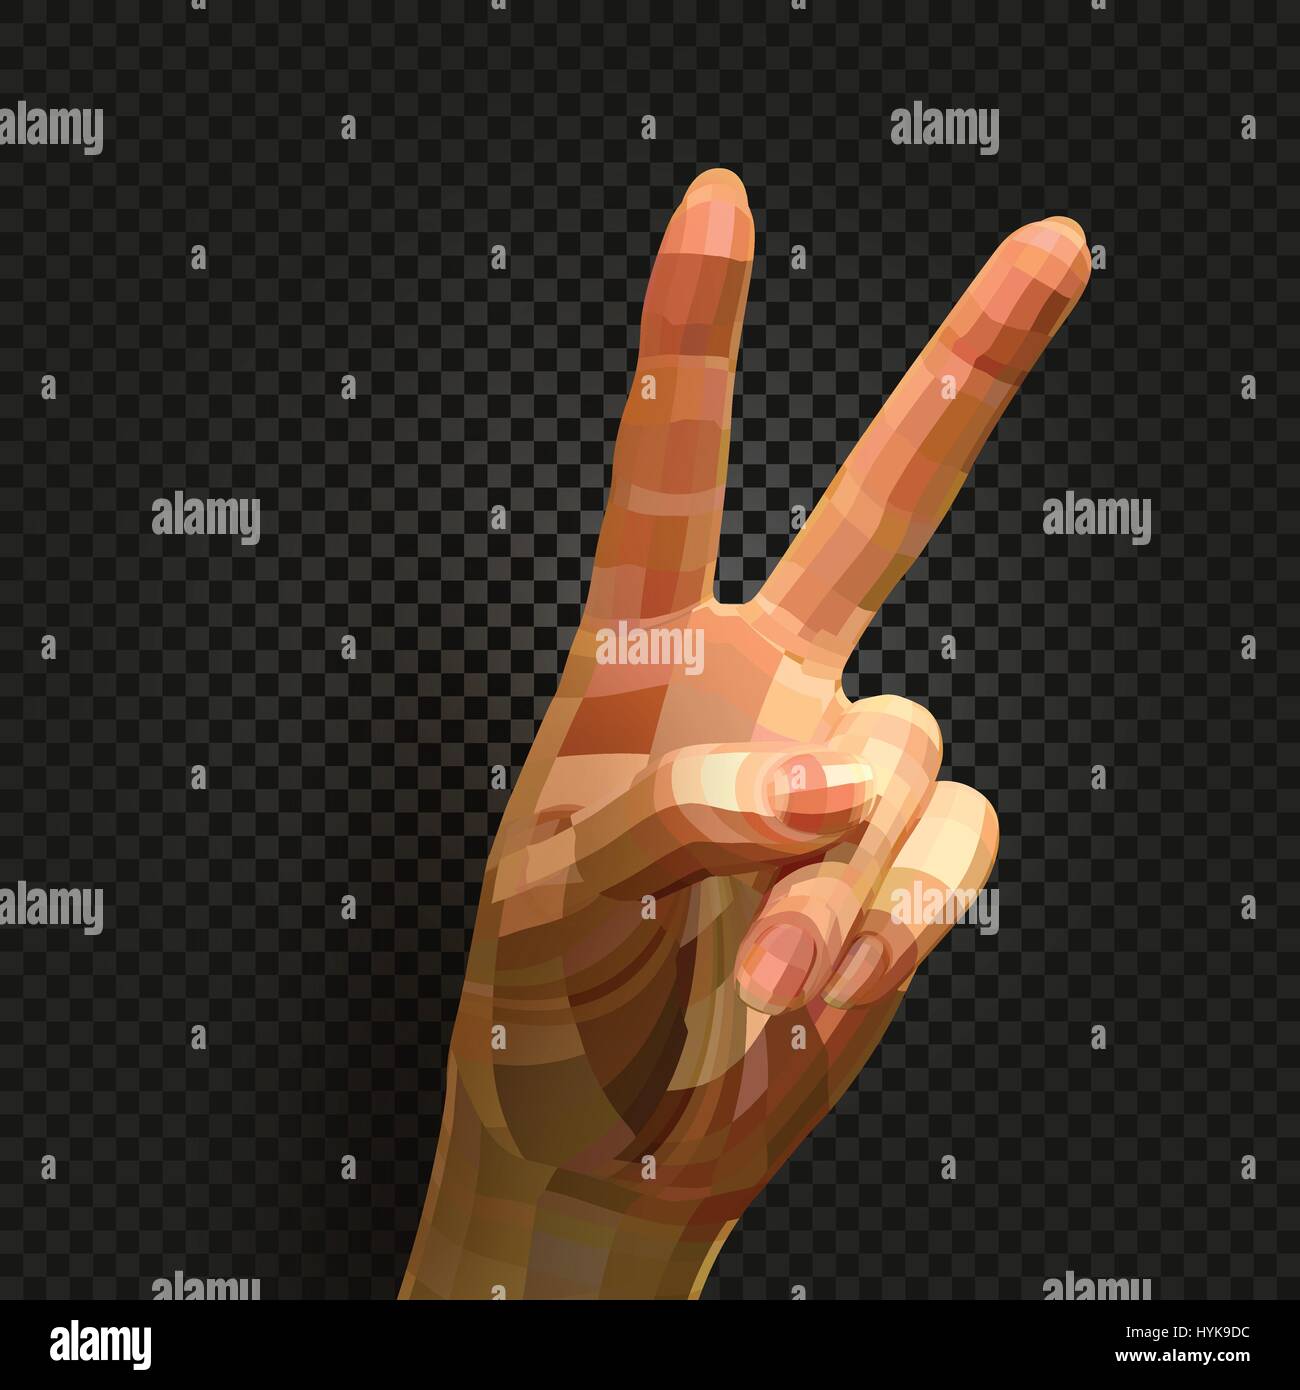 Isolato realistico astratto mano umana immagine su sfondo nero, due dita la pace o segno di vittoria illustrazione vettoriale Illustrazione Vettoriale